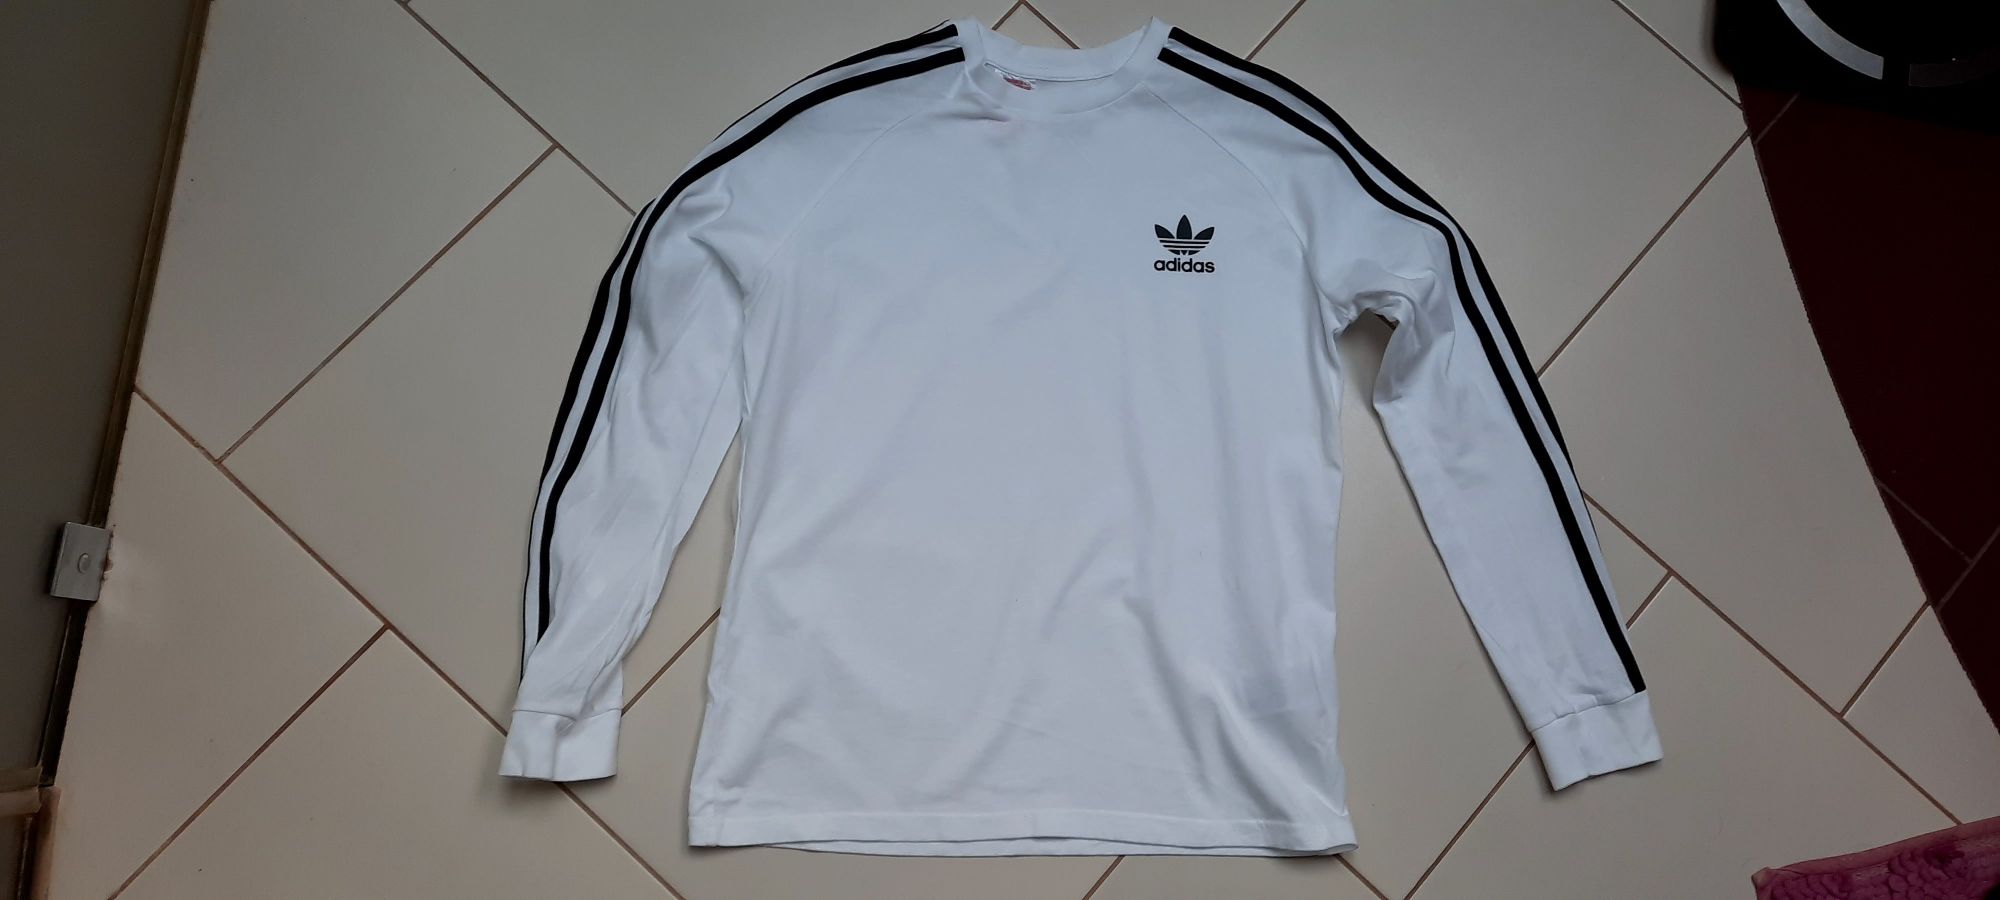 Adidas bluzka biała 164